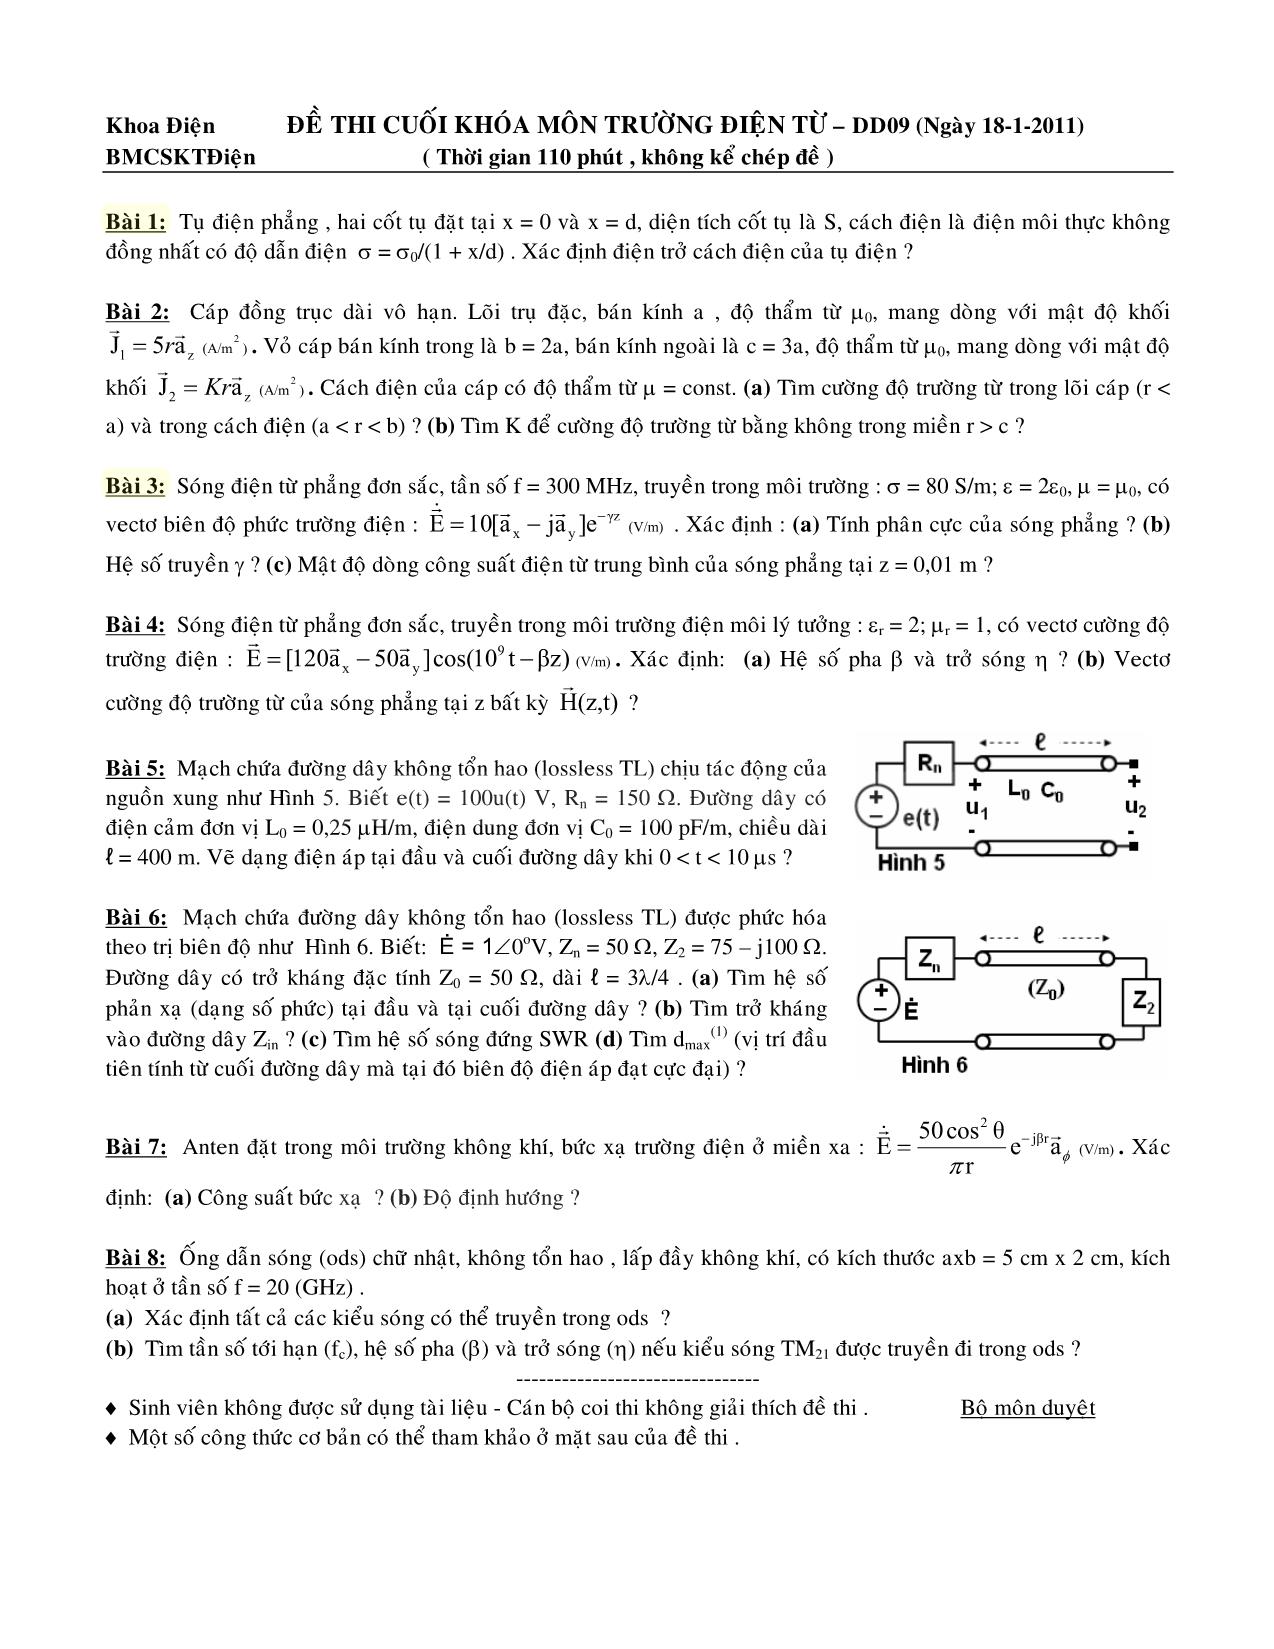 Đề thi cuối khóa môn Trường điện từ - DD09 trang 1